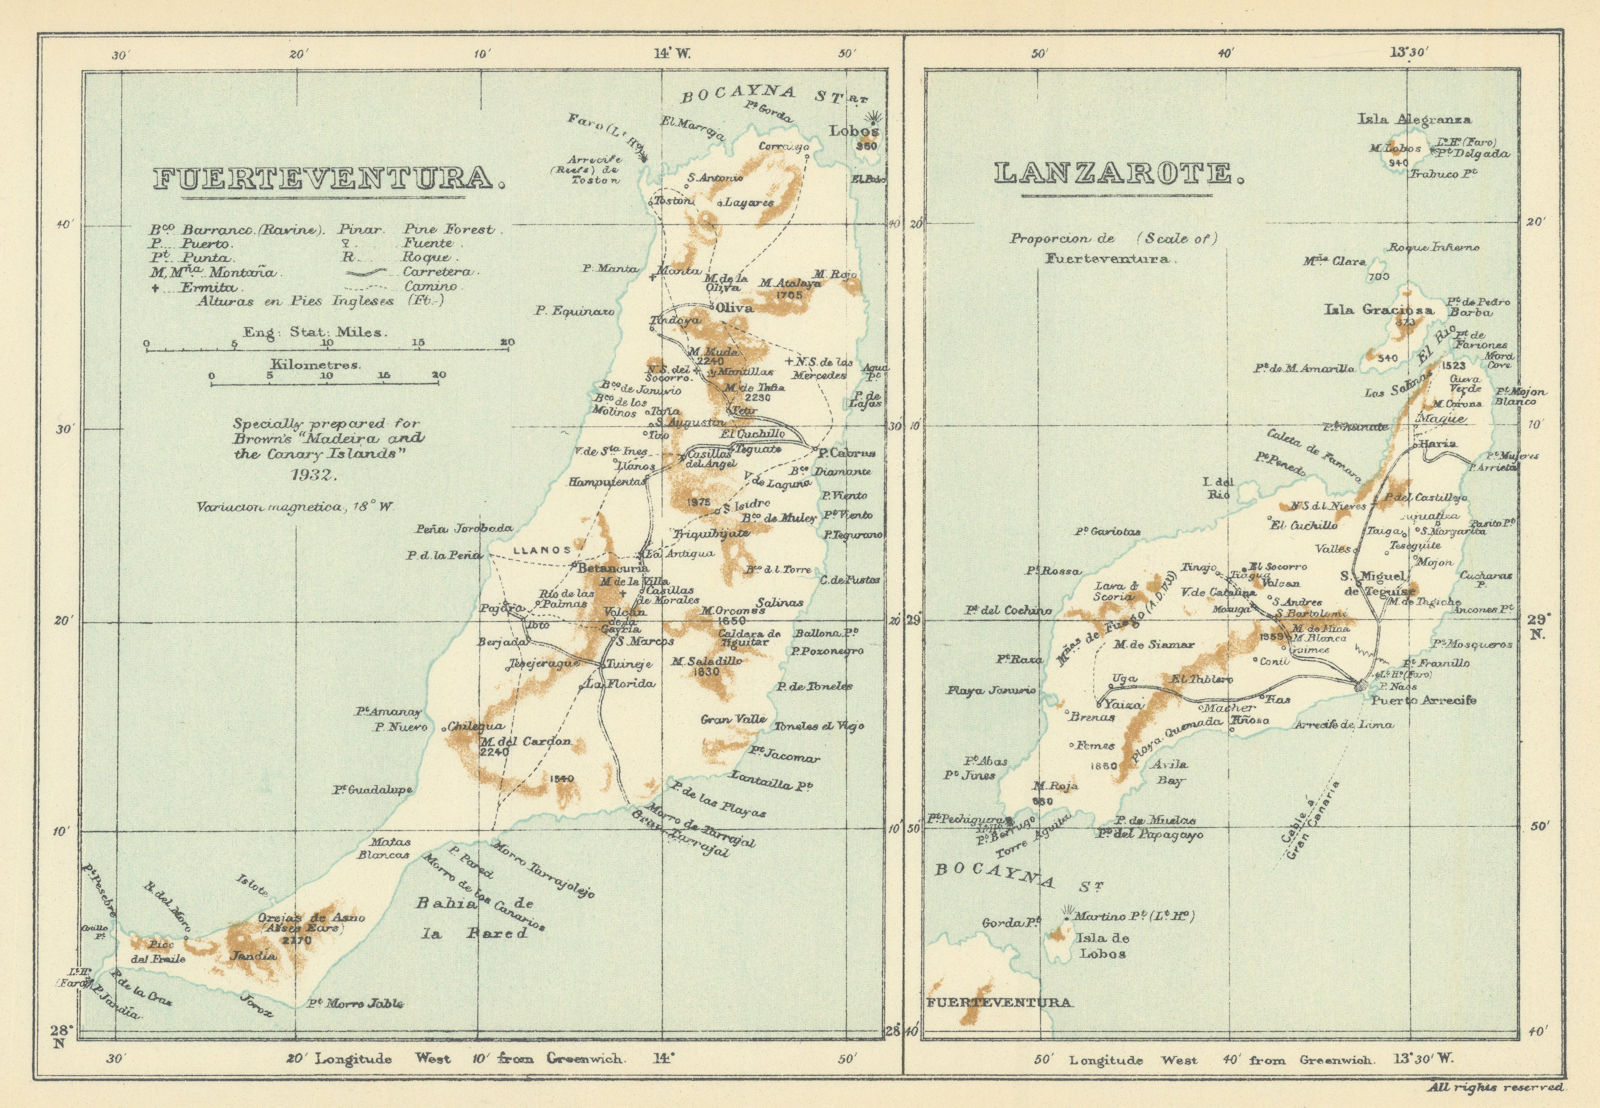 Fuerteventura & Lanzarote, Canary Islands. SAMLER BROWN 1932 old vintage map